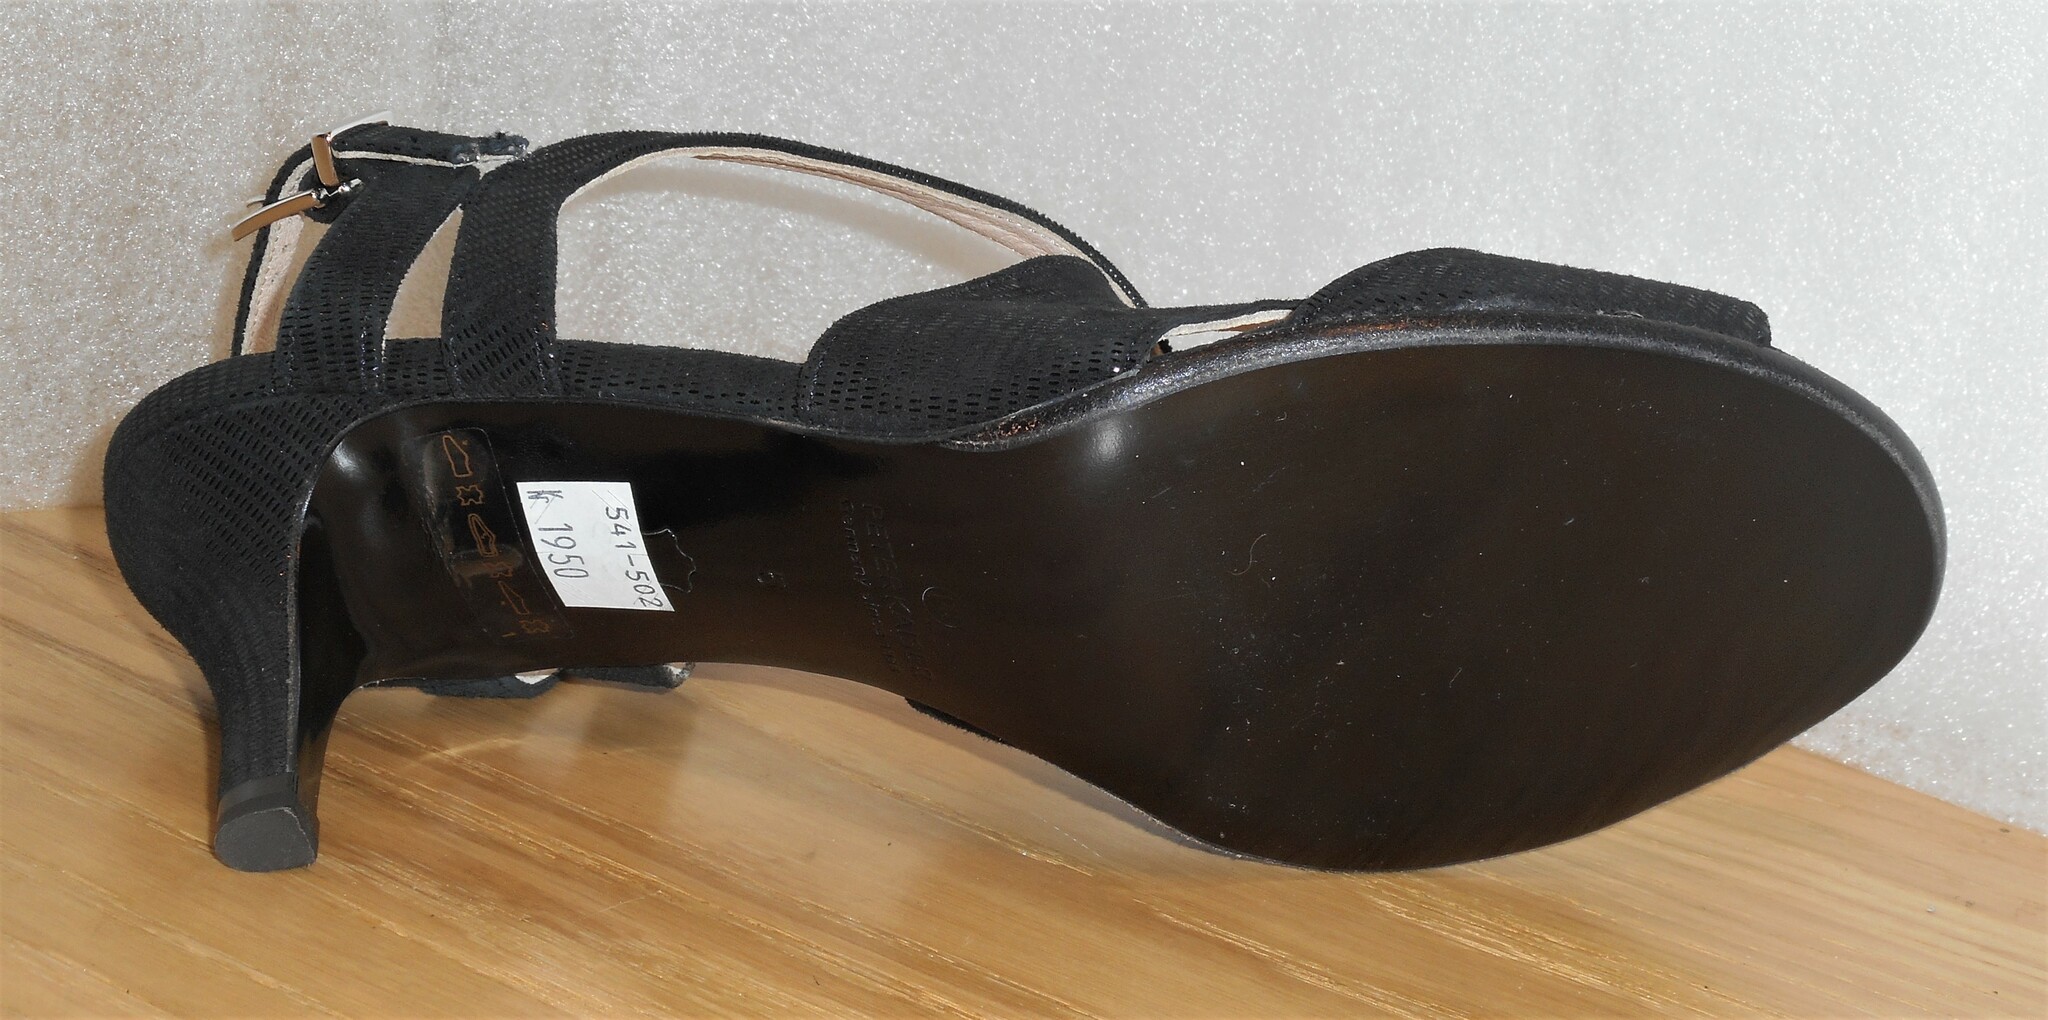 Elegant svart sandalett - fabrikat Peter Kaiser